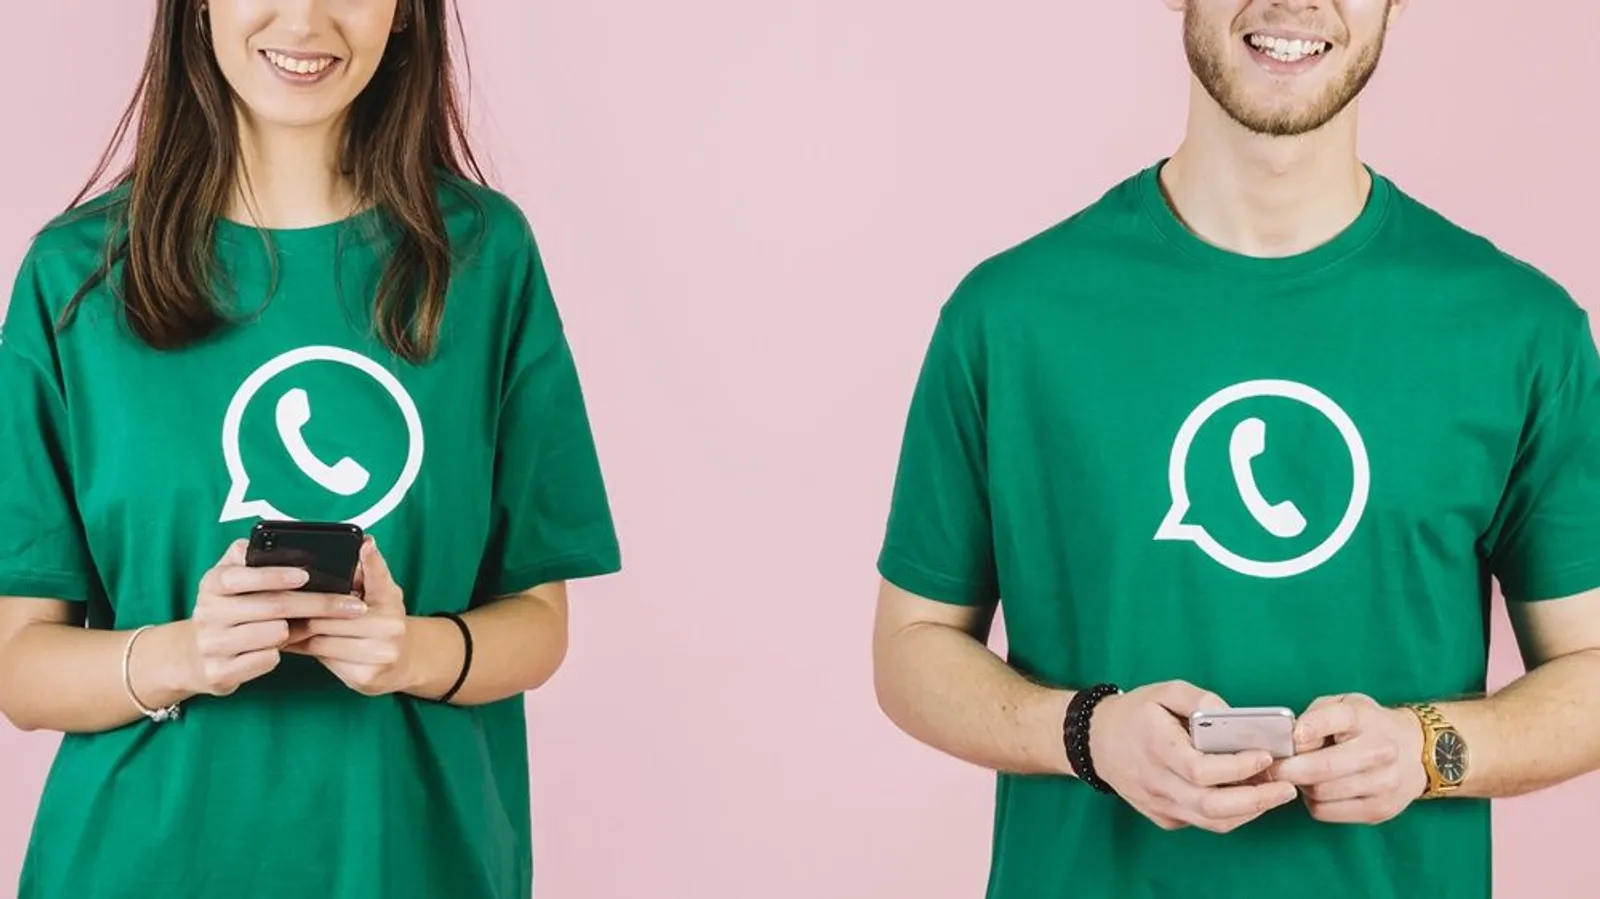 Ini 5 Fitur WhatsApp yang Menjamin Keamanan Privasi Kamu